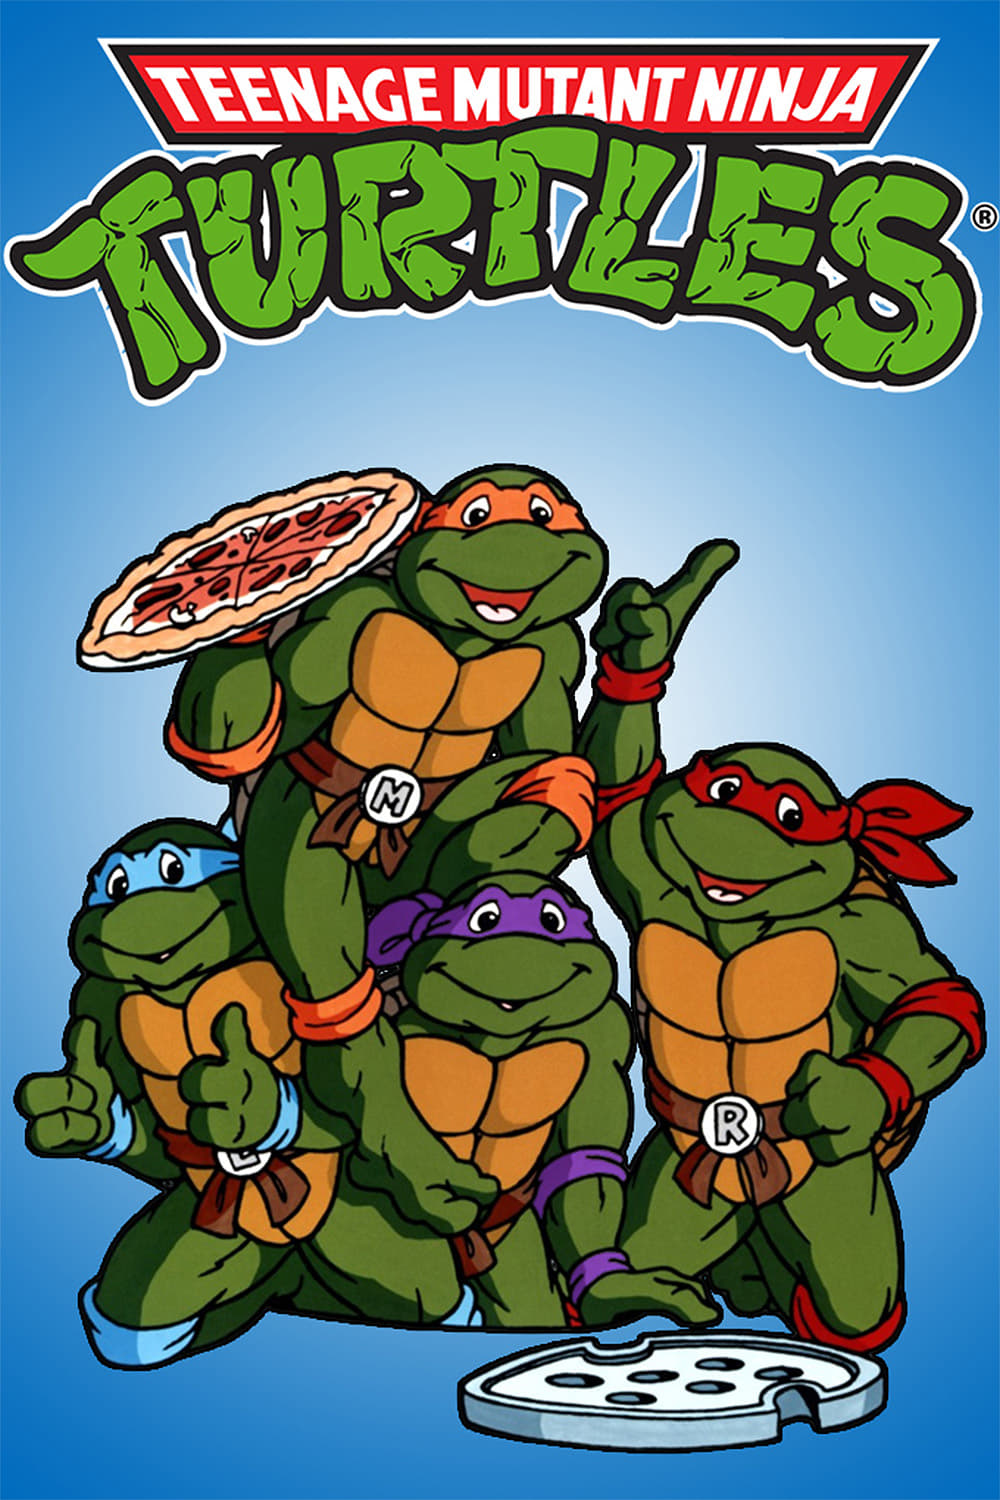 Teenage Mutant Ninja Turtles TV Shows About Turtle